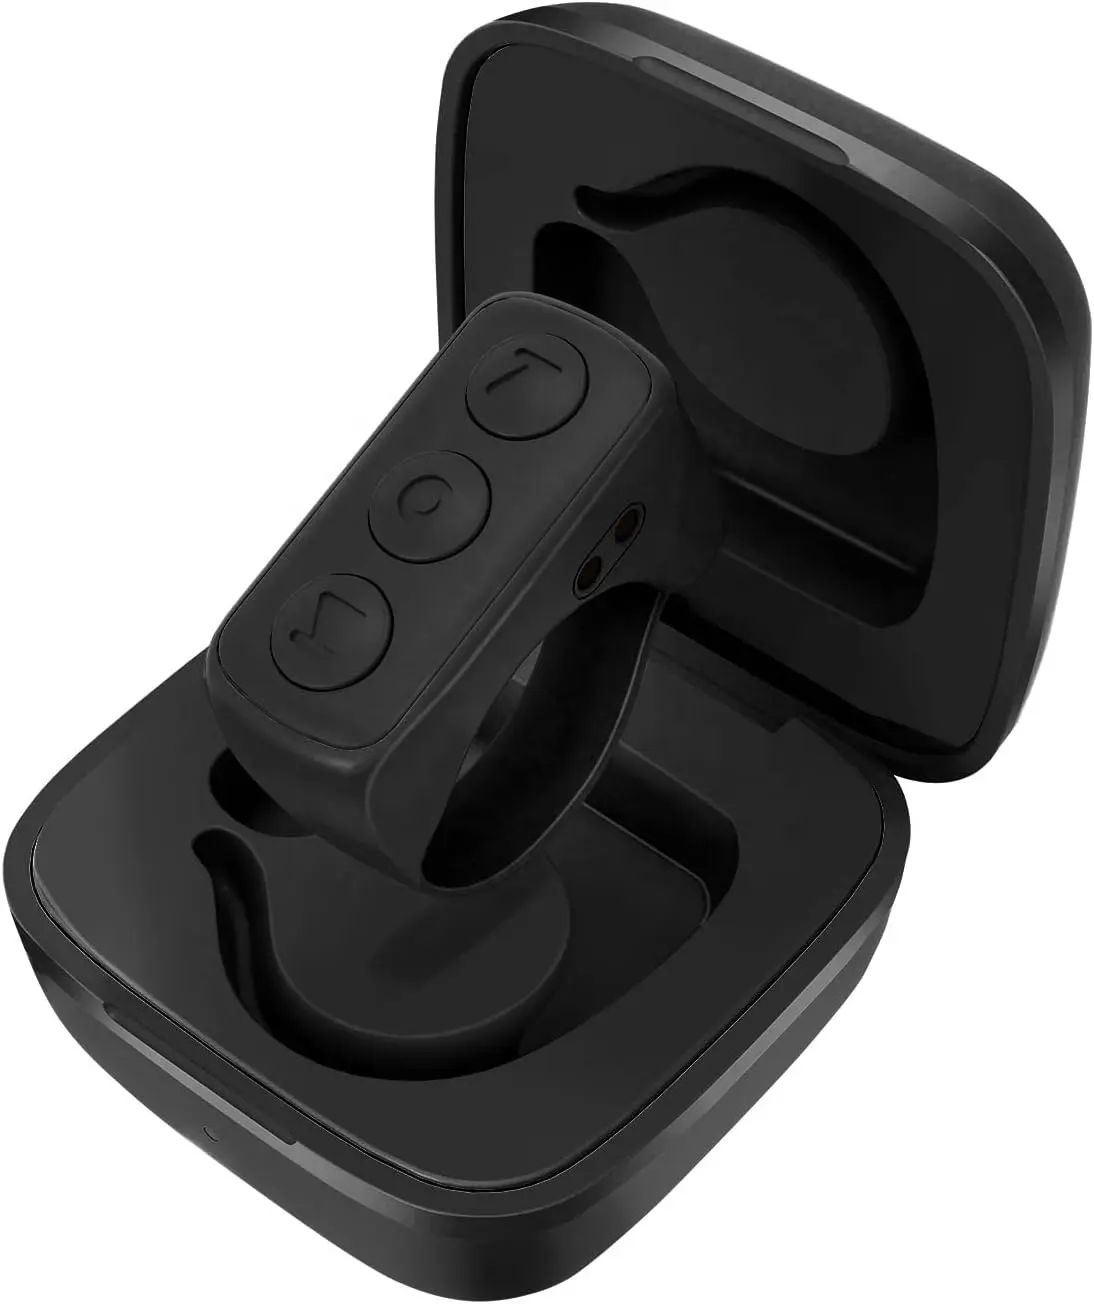 Hot Sale Wireless Small Size Handy zubehör Turner Scrolling Down Ring Bluetooth-Fernbedienung mit Lade koffer